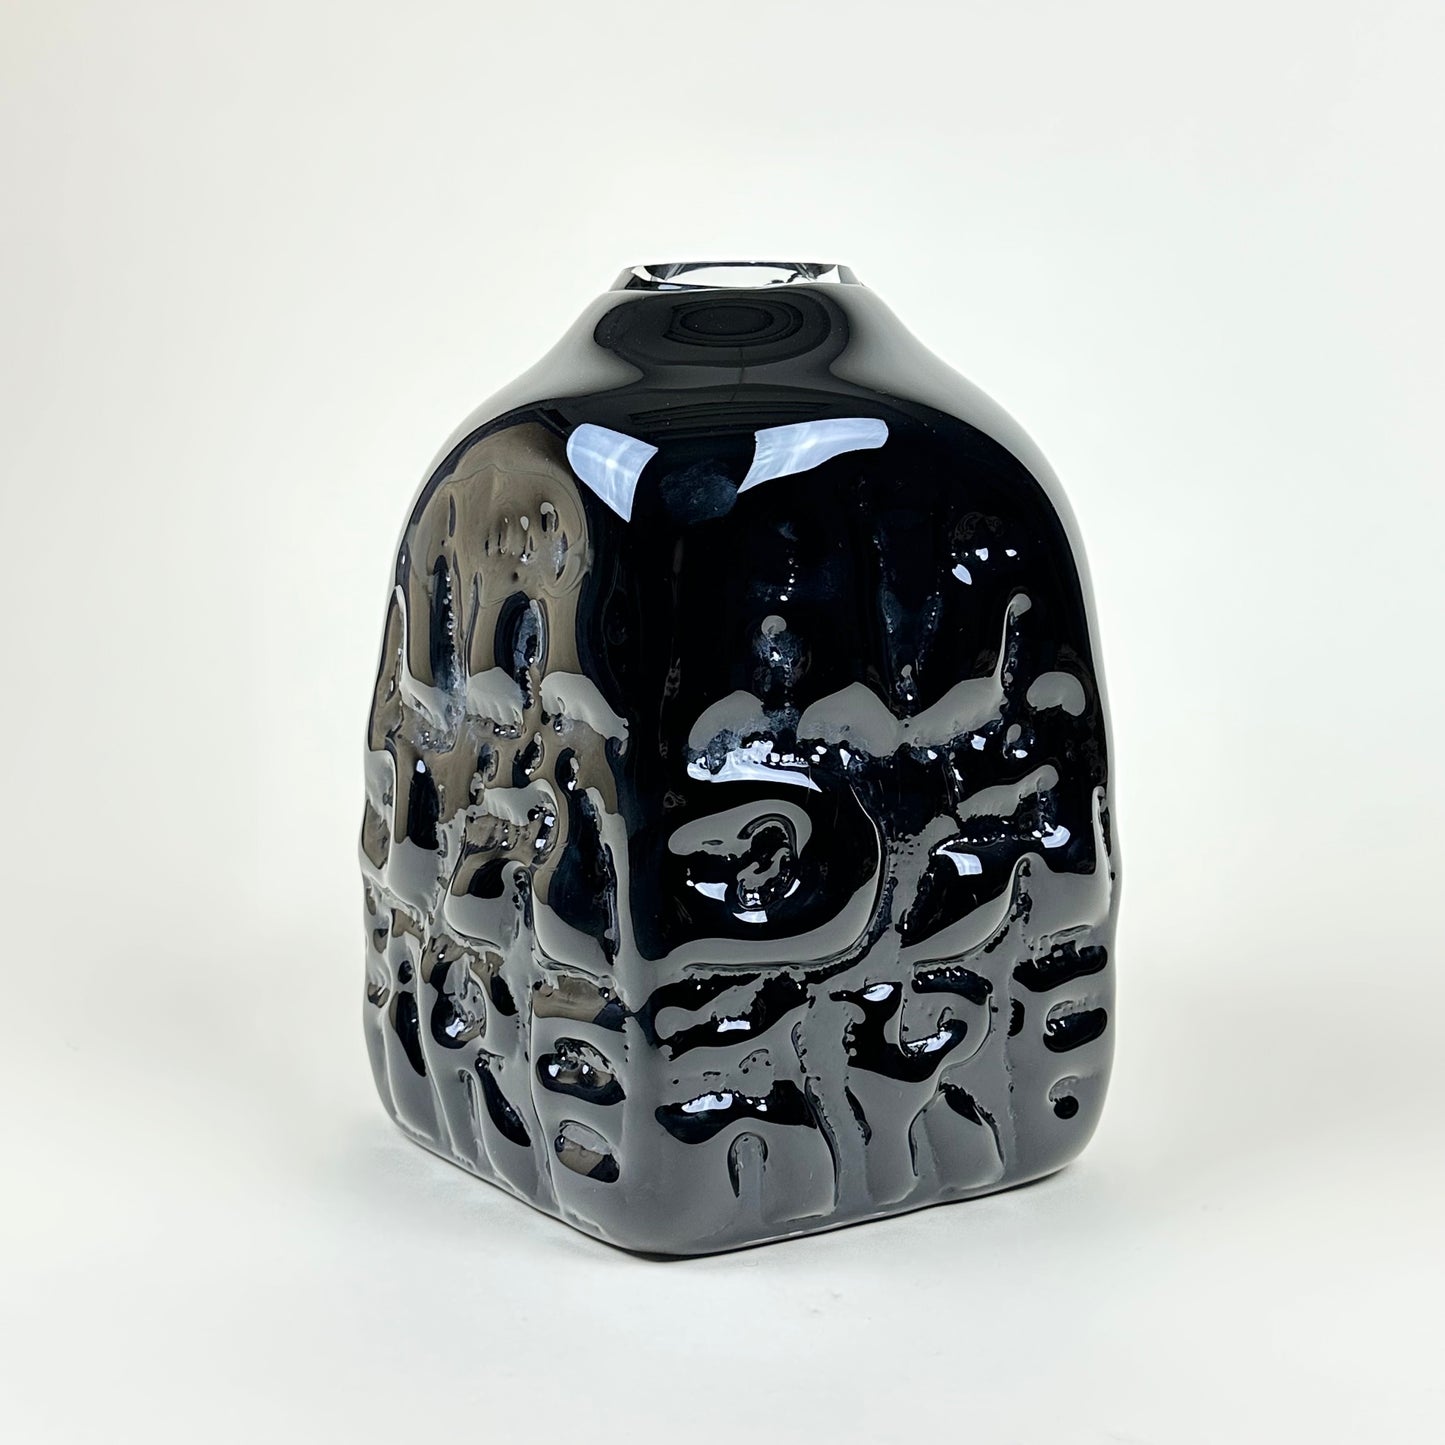 Black "AADÄÄRE" vase by Studio Reiser